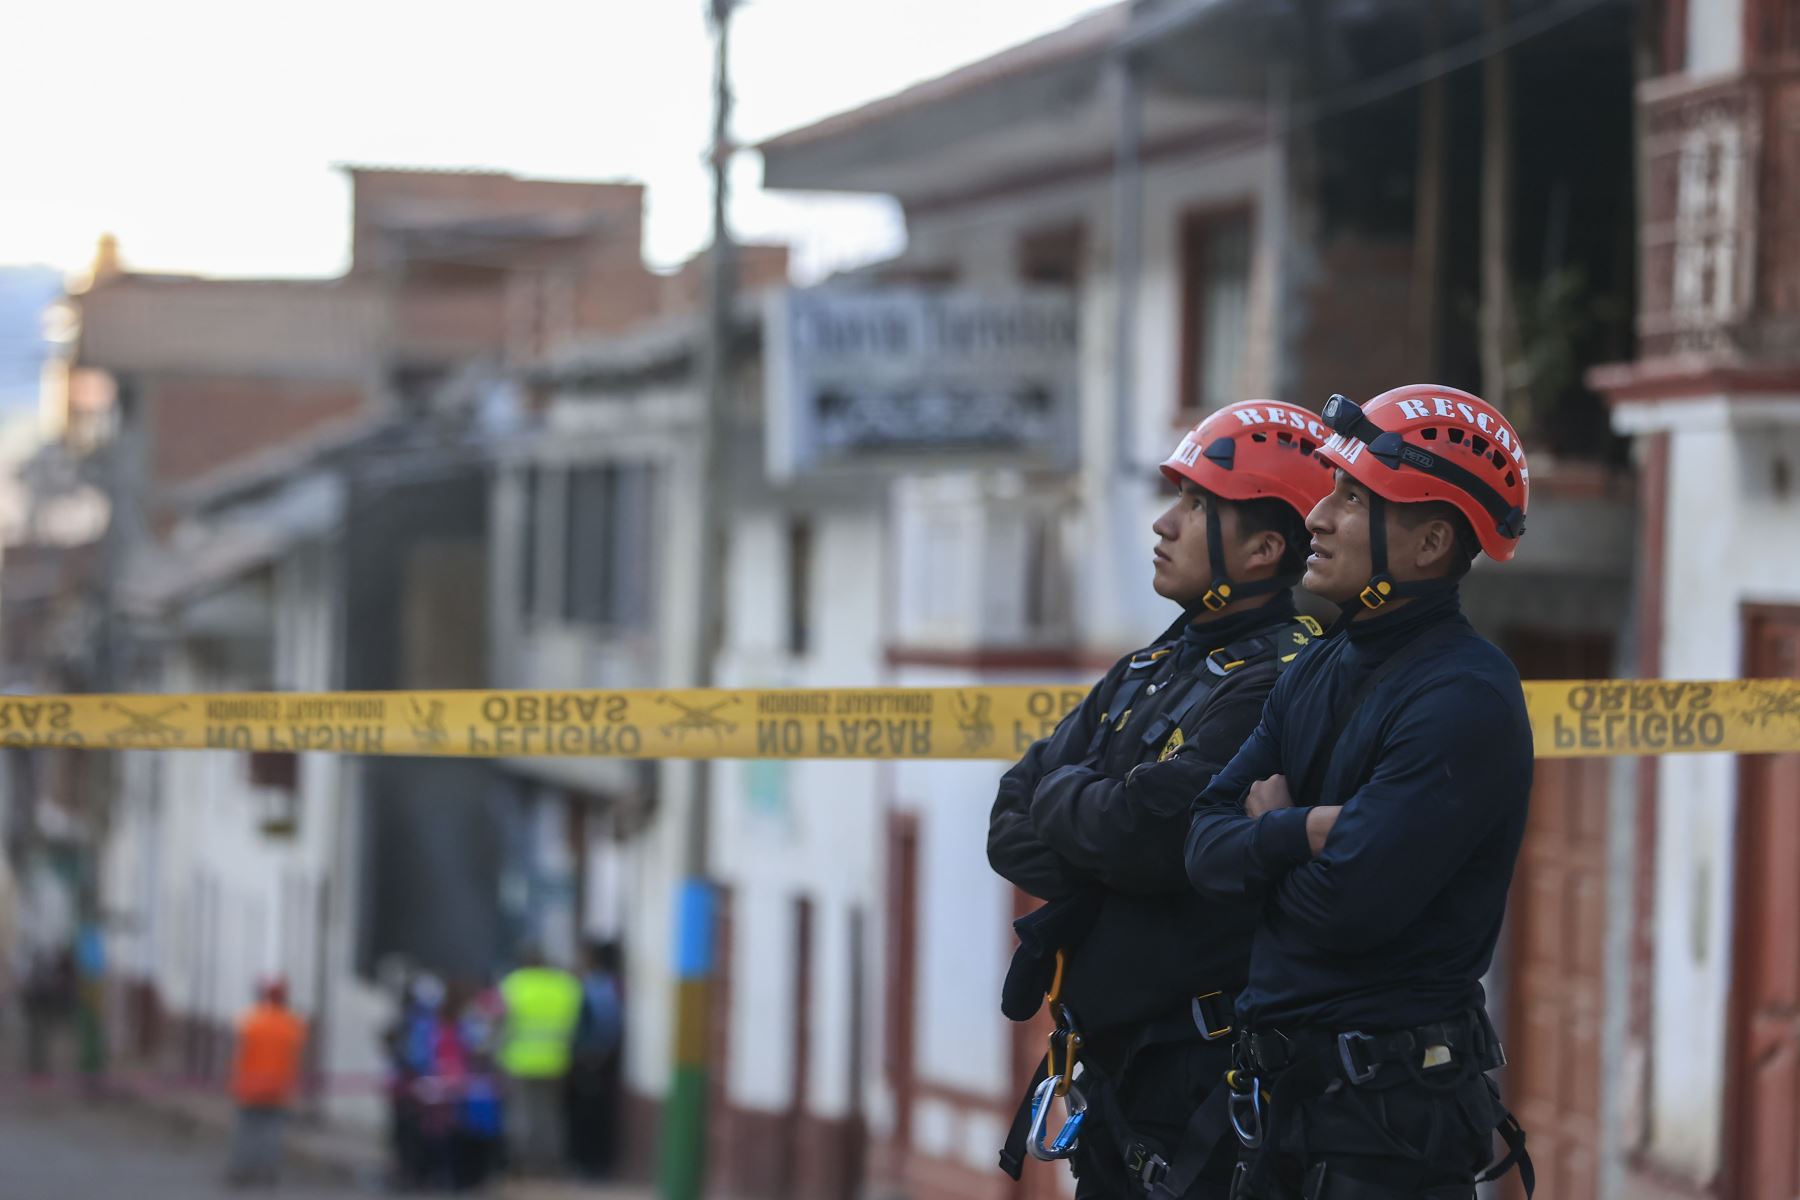 Unidades de rescate especializados ayudan a los damnificados tras el deslizamiento de tierra registrado en el sector de Cruz de Shallapa del distrito de Chavín de Huántar.
Foto: ANDINA/Carla Patiño